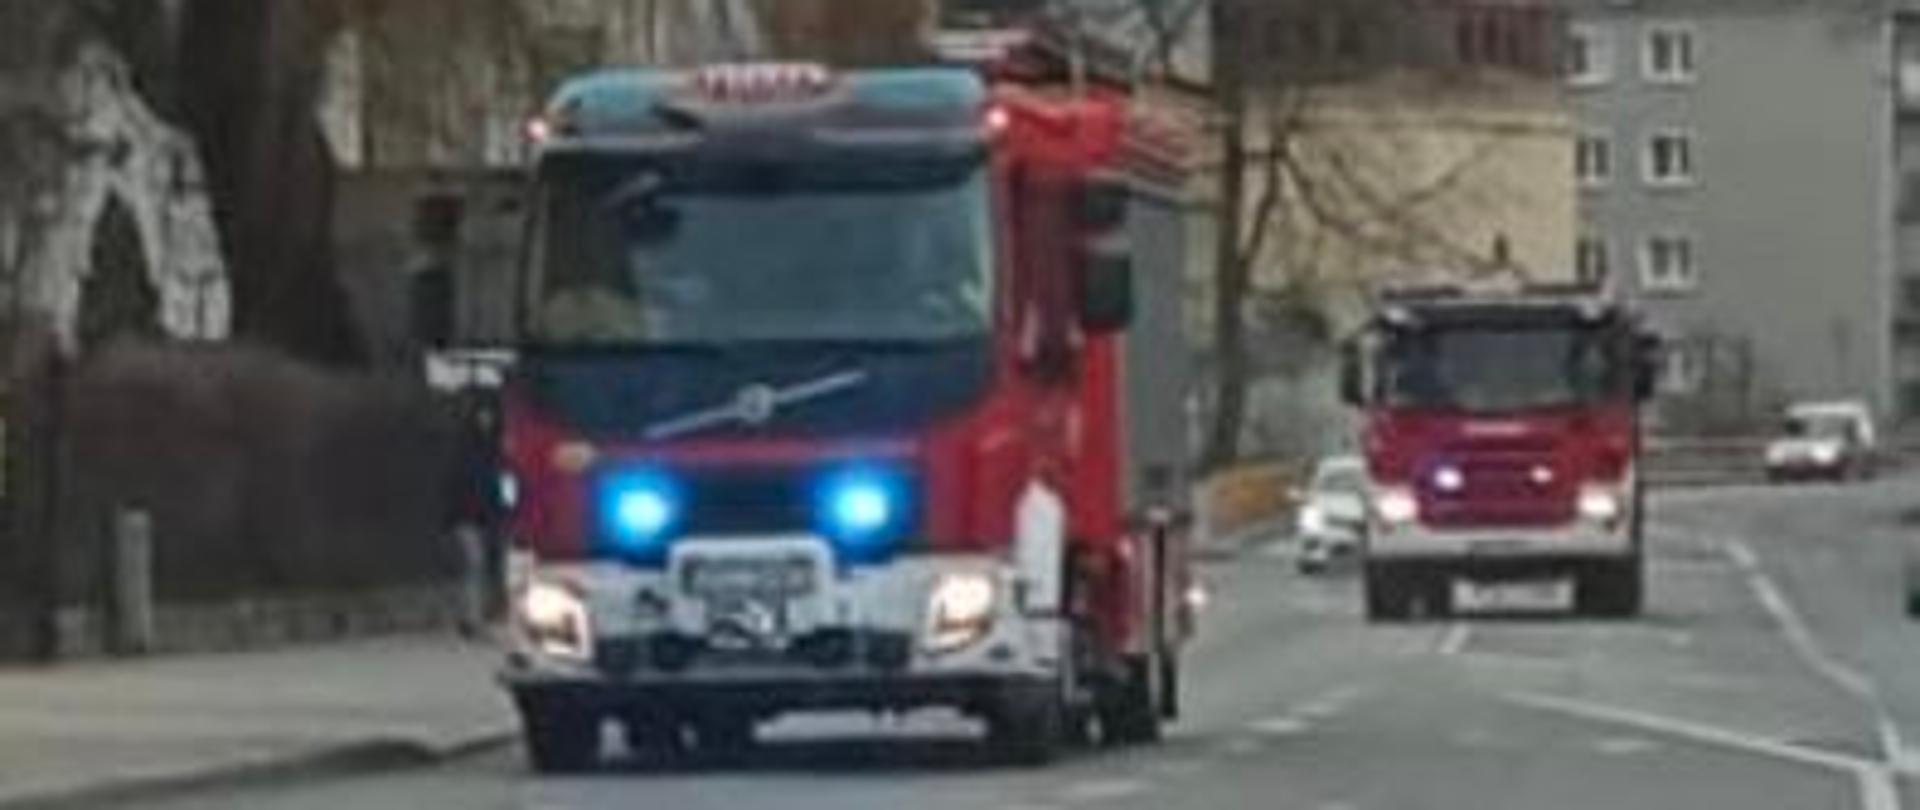 Na zdjęciu znajdują się samochody pożarnicze jadące alarmowo drogą